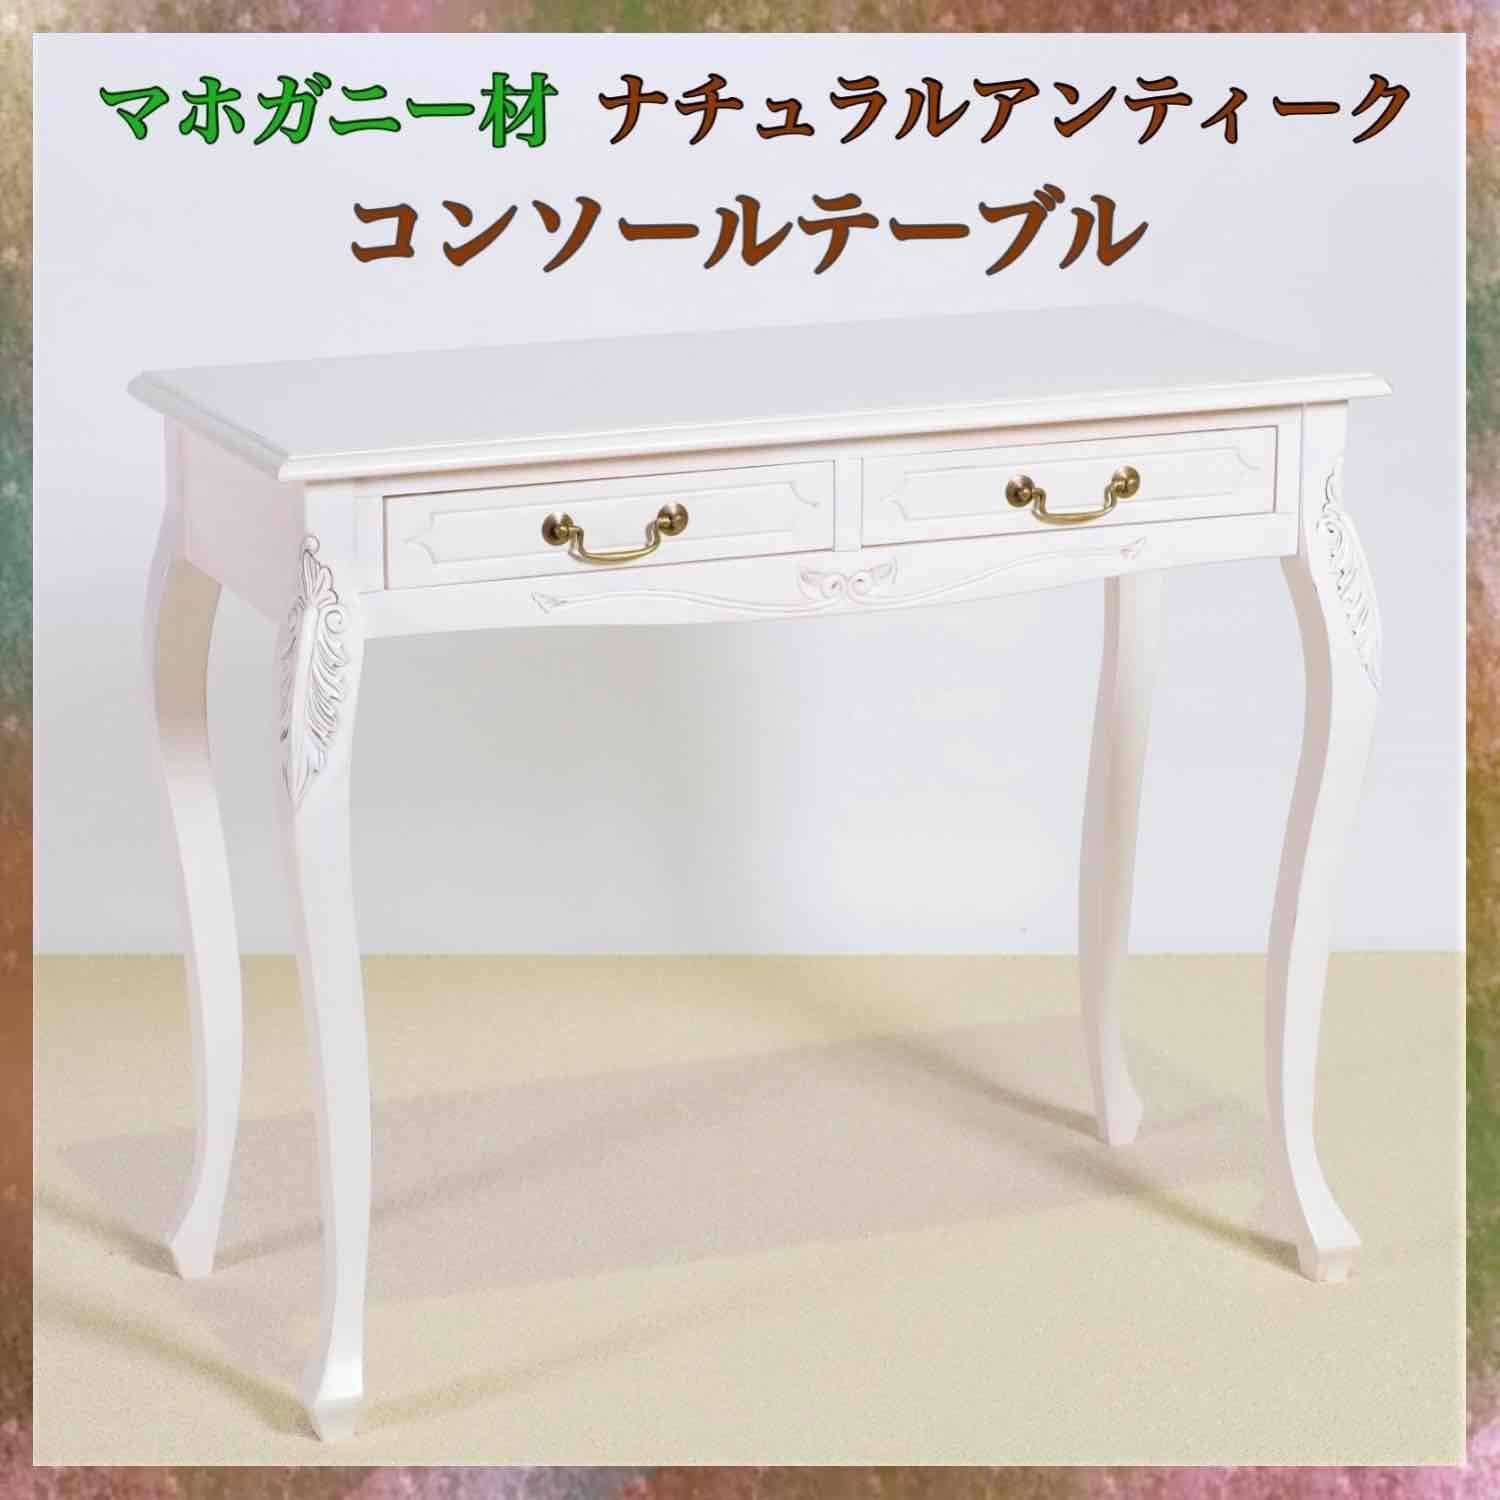 【特別販売】アンティーク調 コンソールテーブル 木製 家具 白 テーブル サイドテーブル